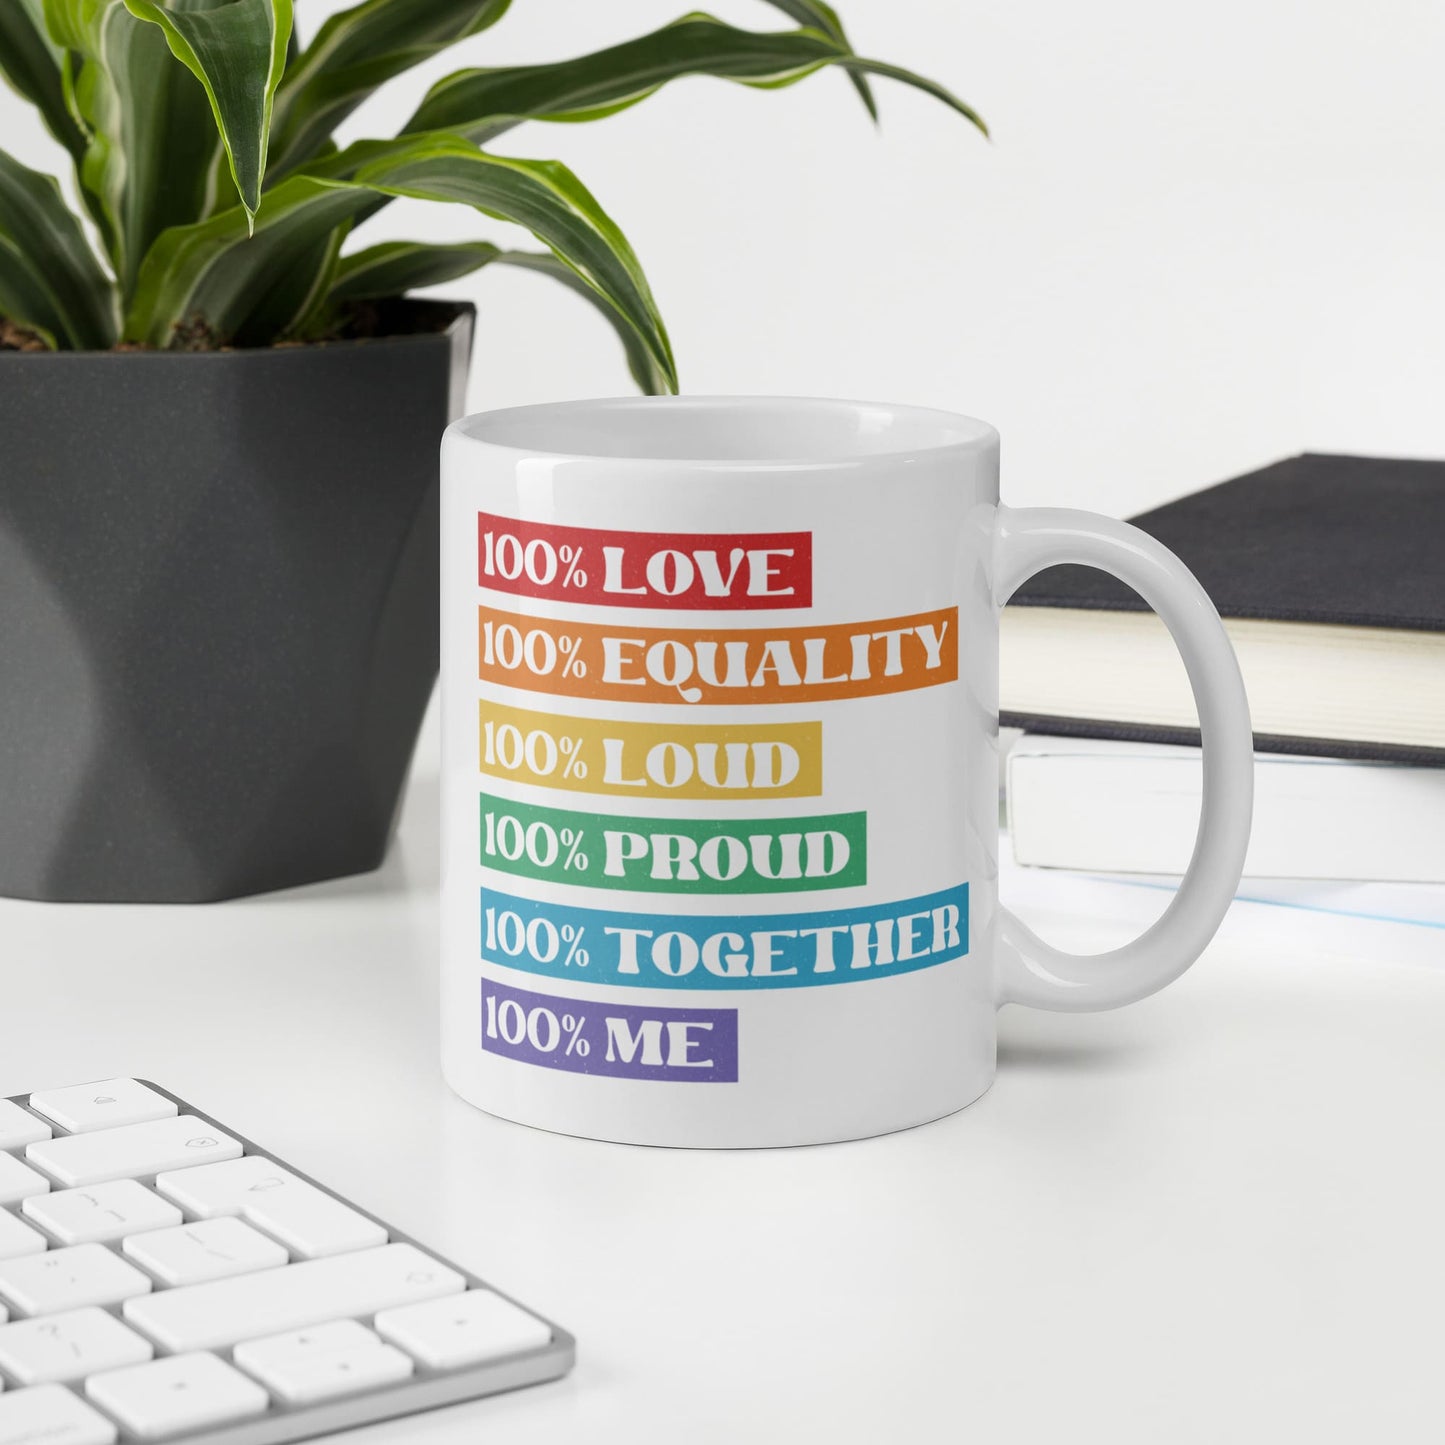 LGBTQ pride mug, LGBT awareness coffee or tea mug on desk